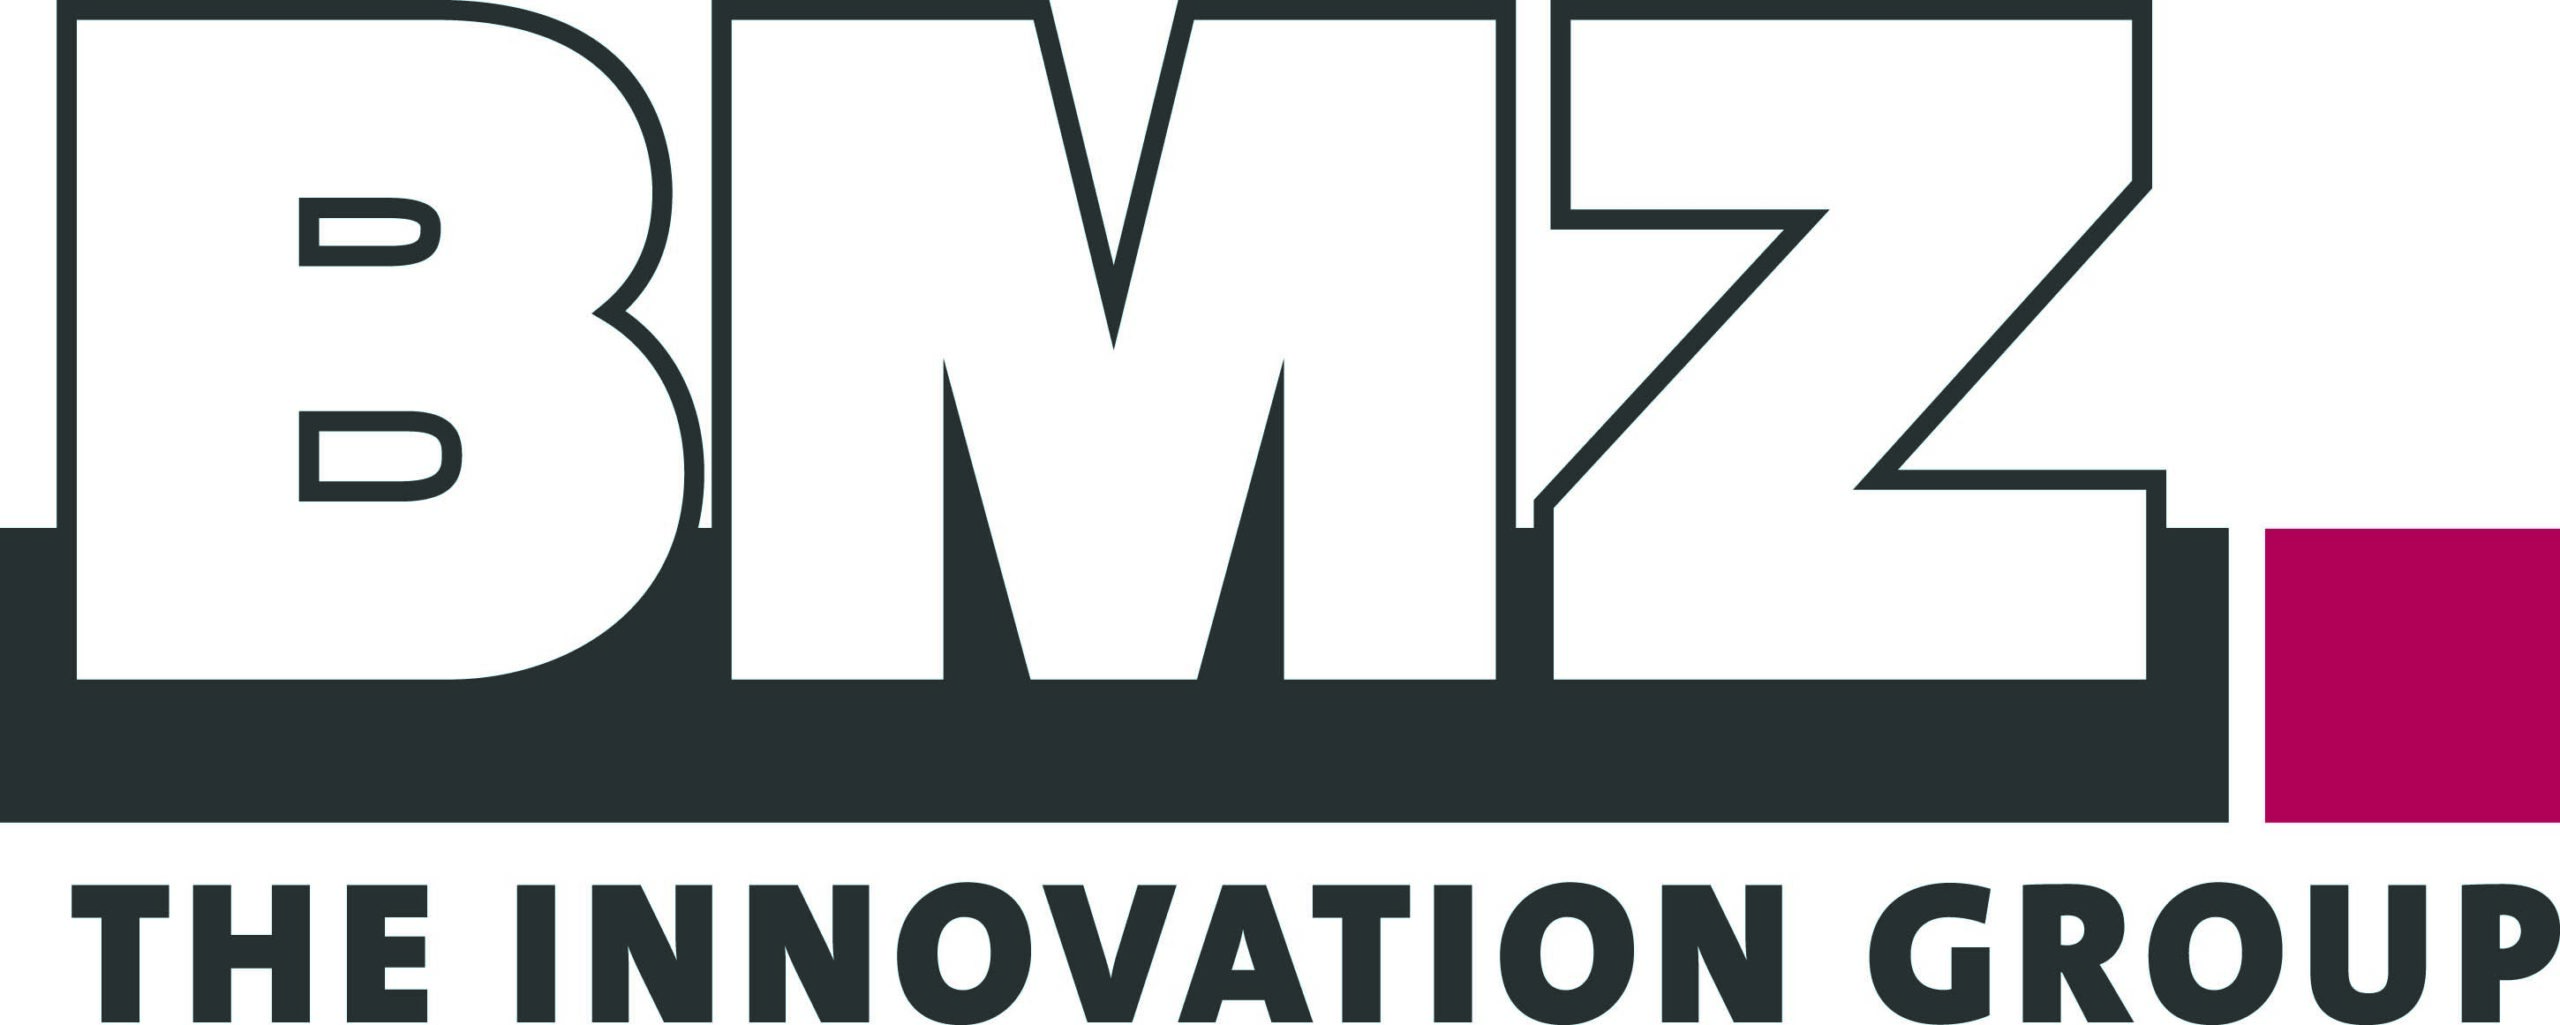 BMZ INNOVATION GROUP Logo 4c scaled